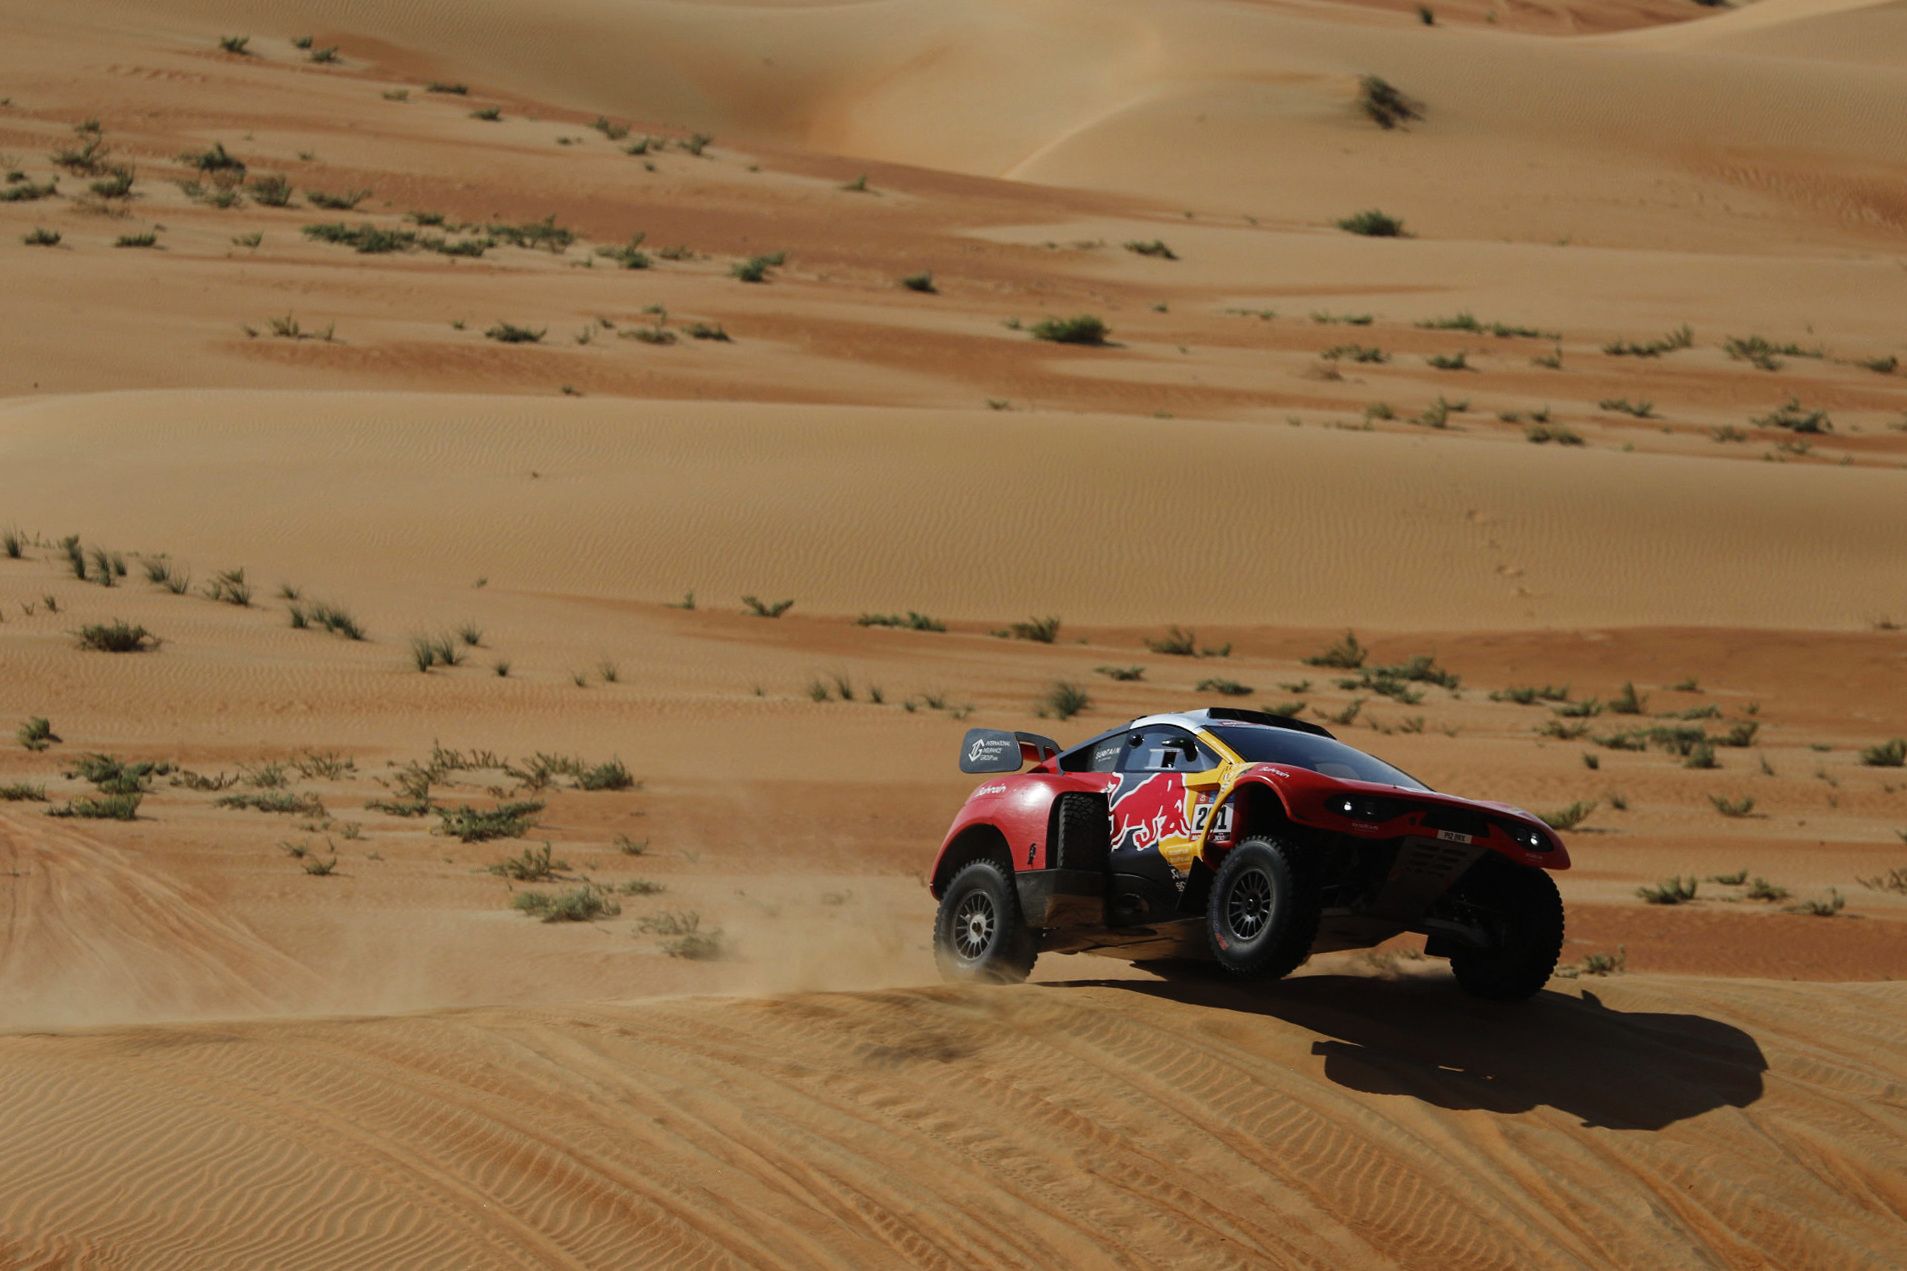 Dakar Rally (163443907).jpg